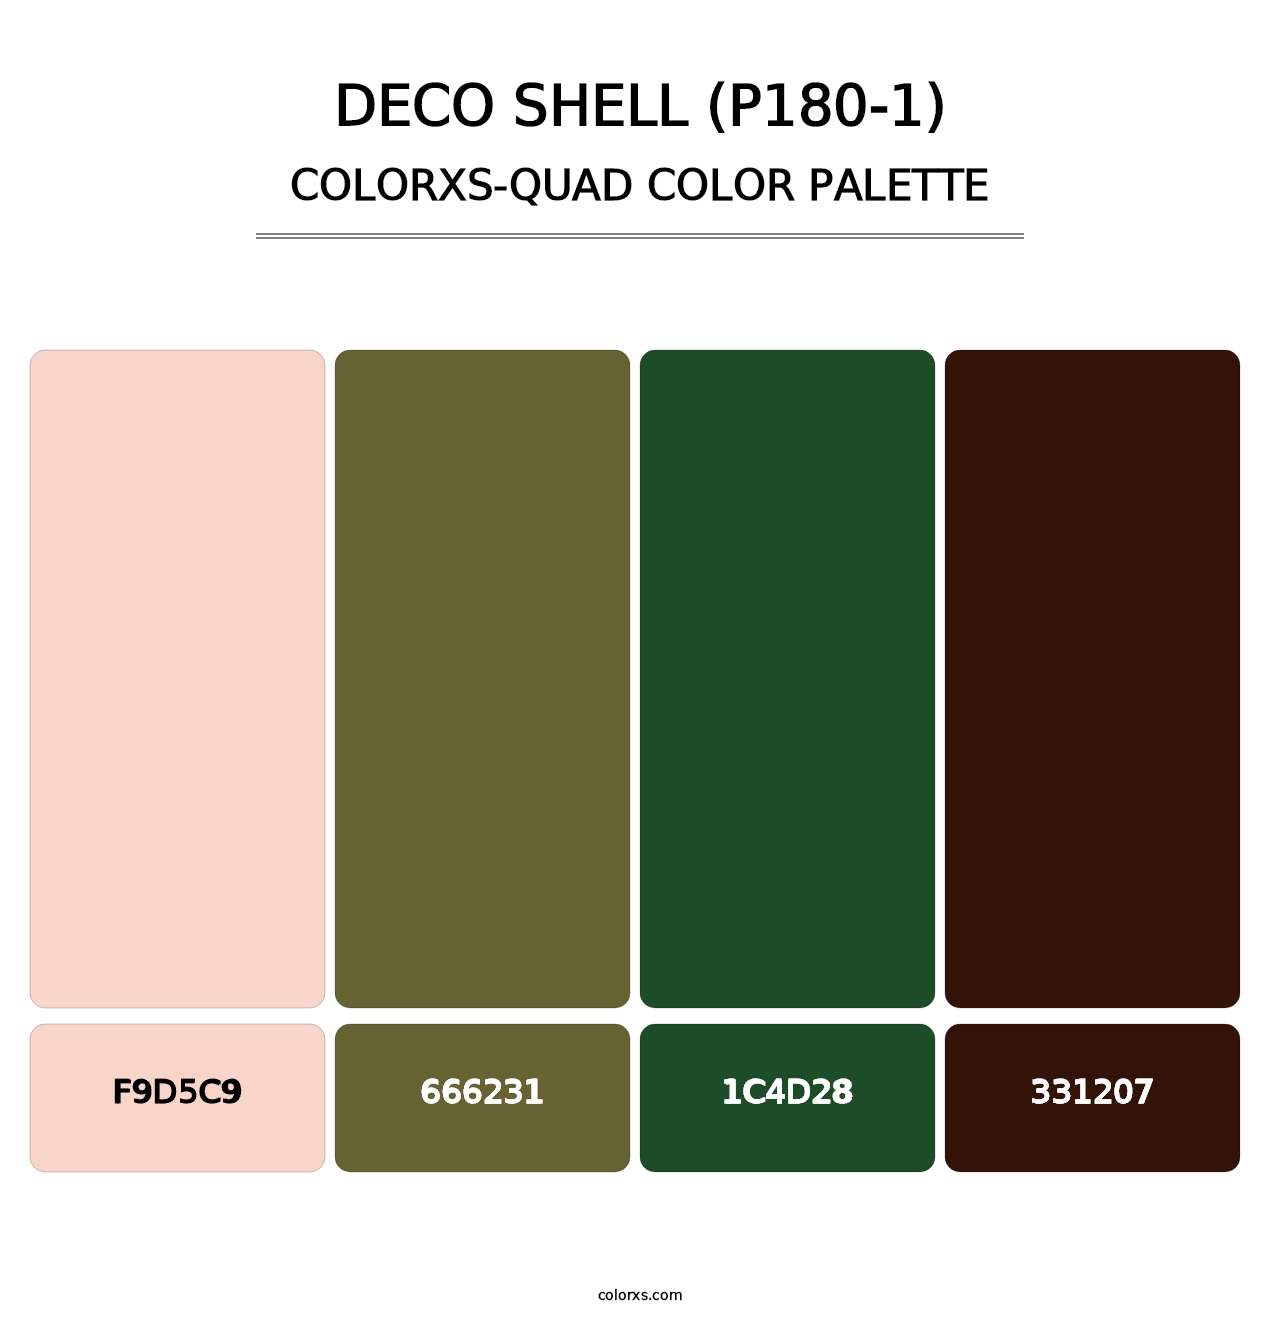 Deco Shell (P180-1) - Colorxs Quad Palette